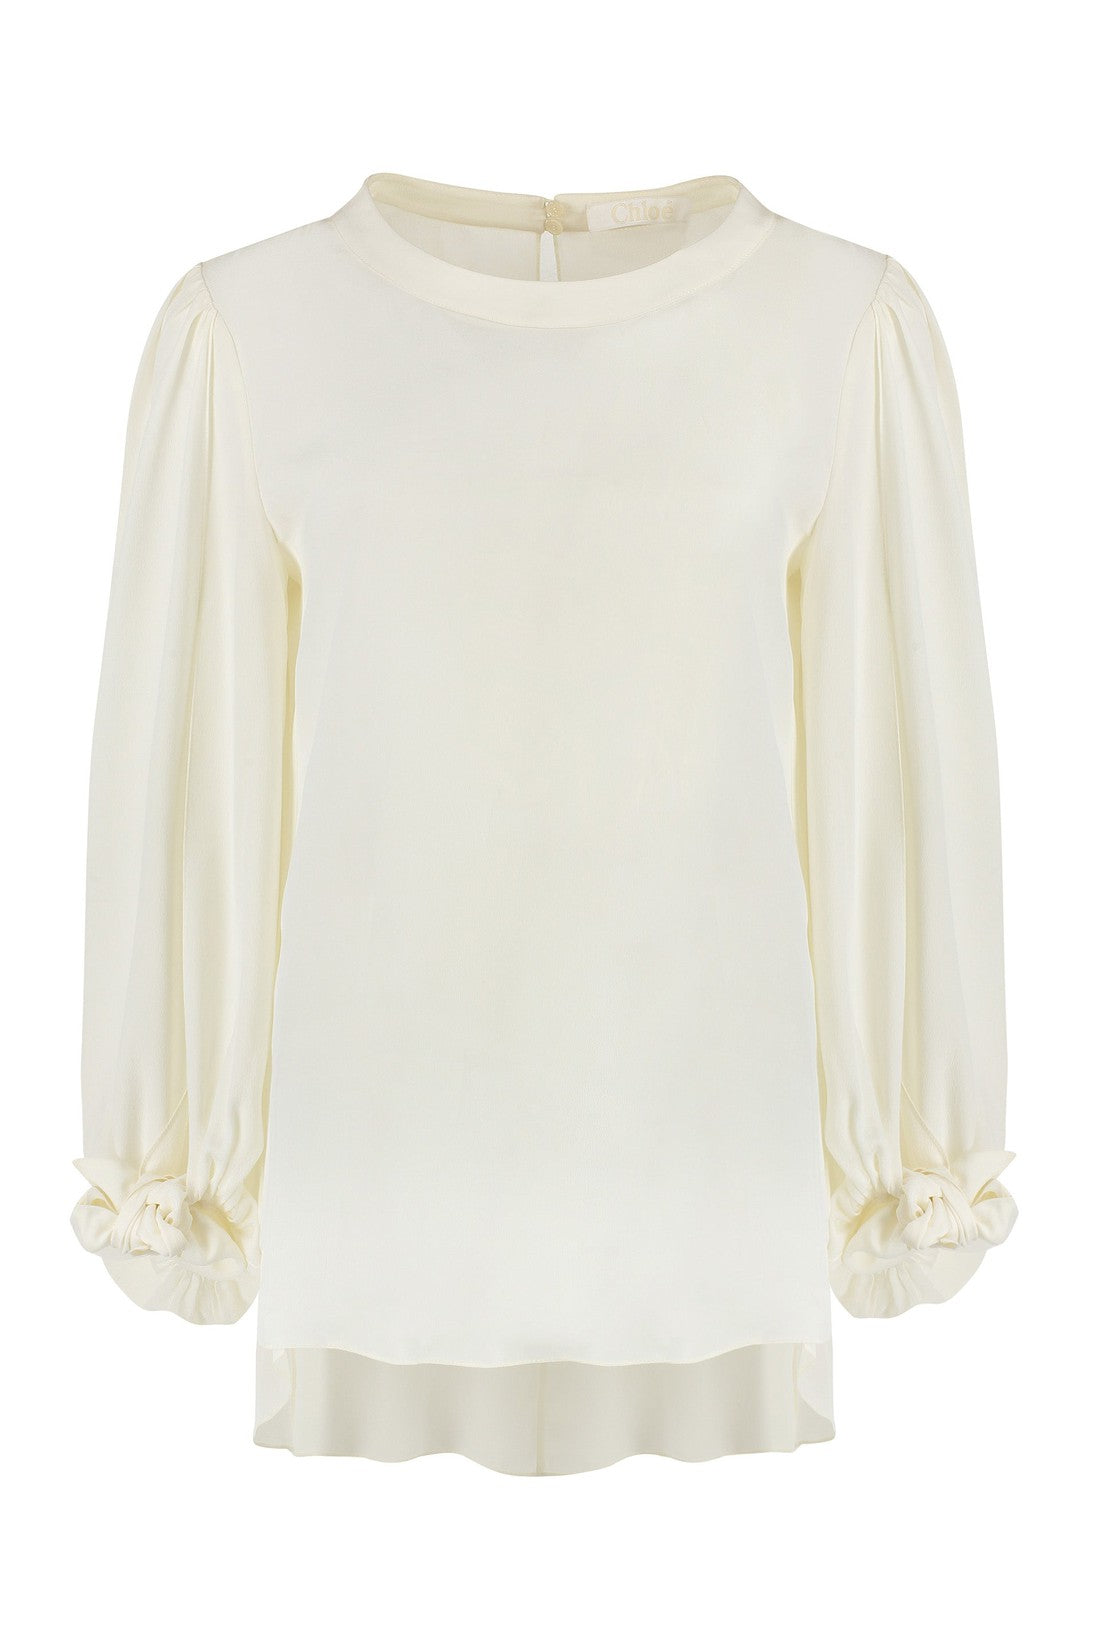 Chloé-OUTLET-SALE-Silk blouse-ARCHIVIST